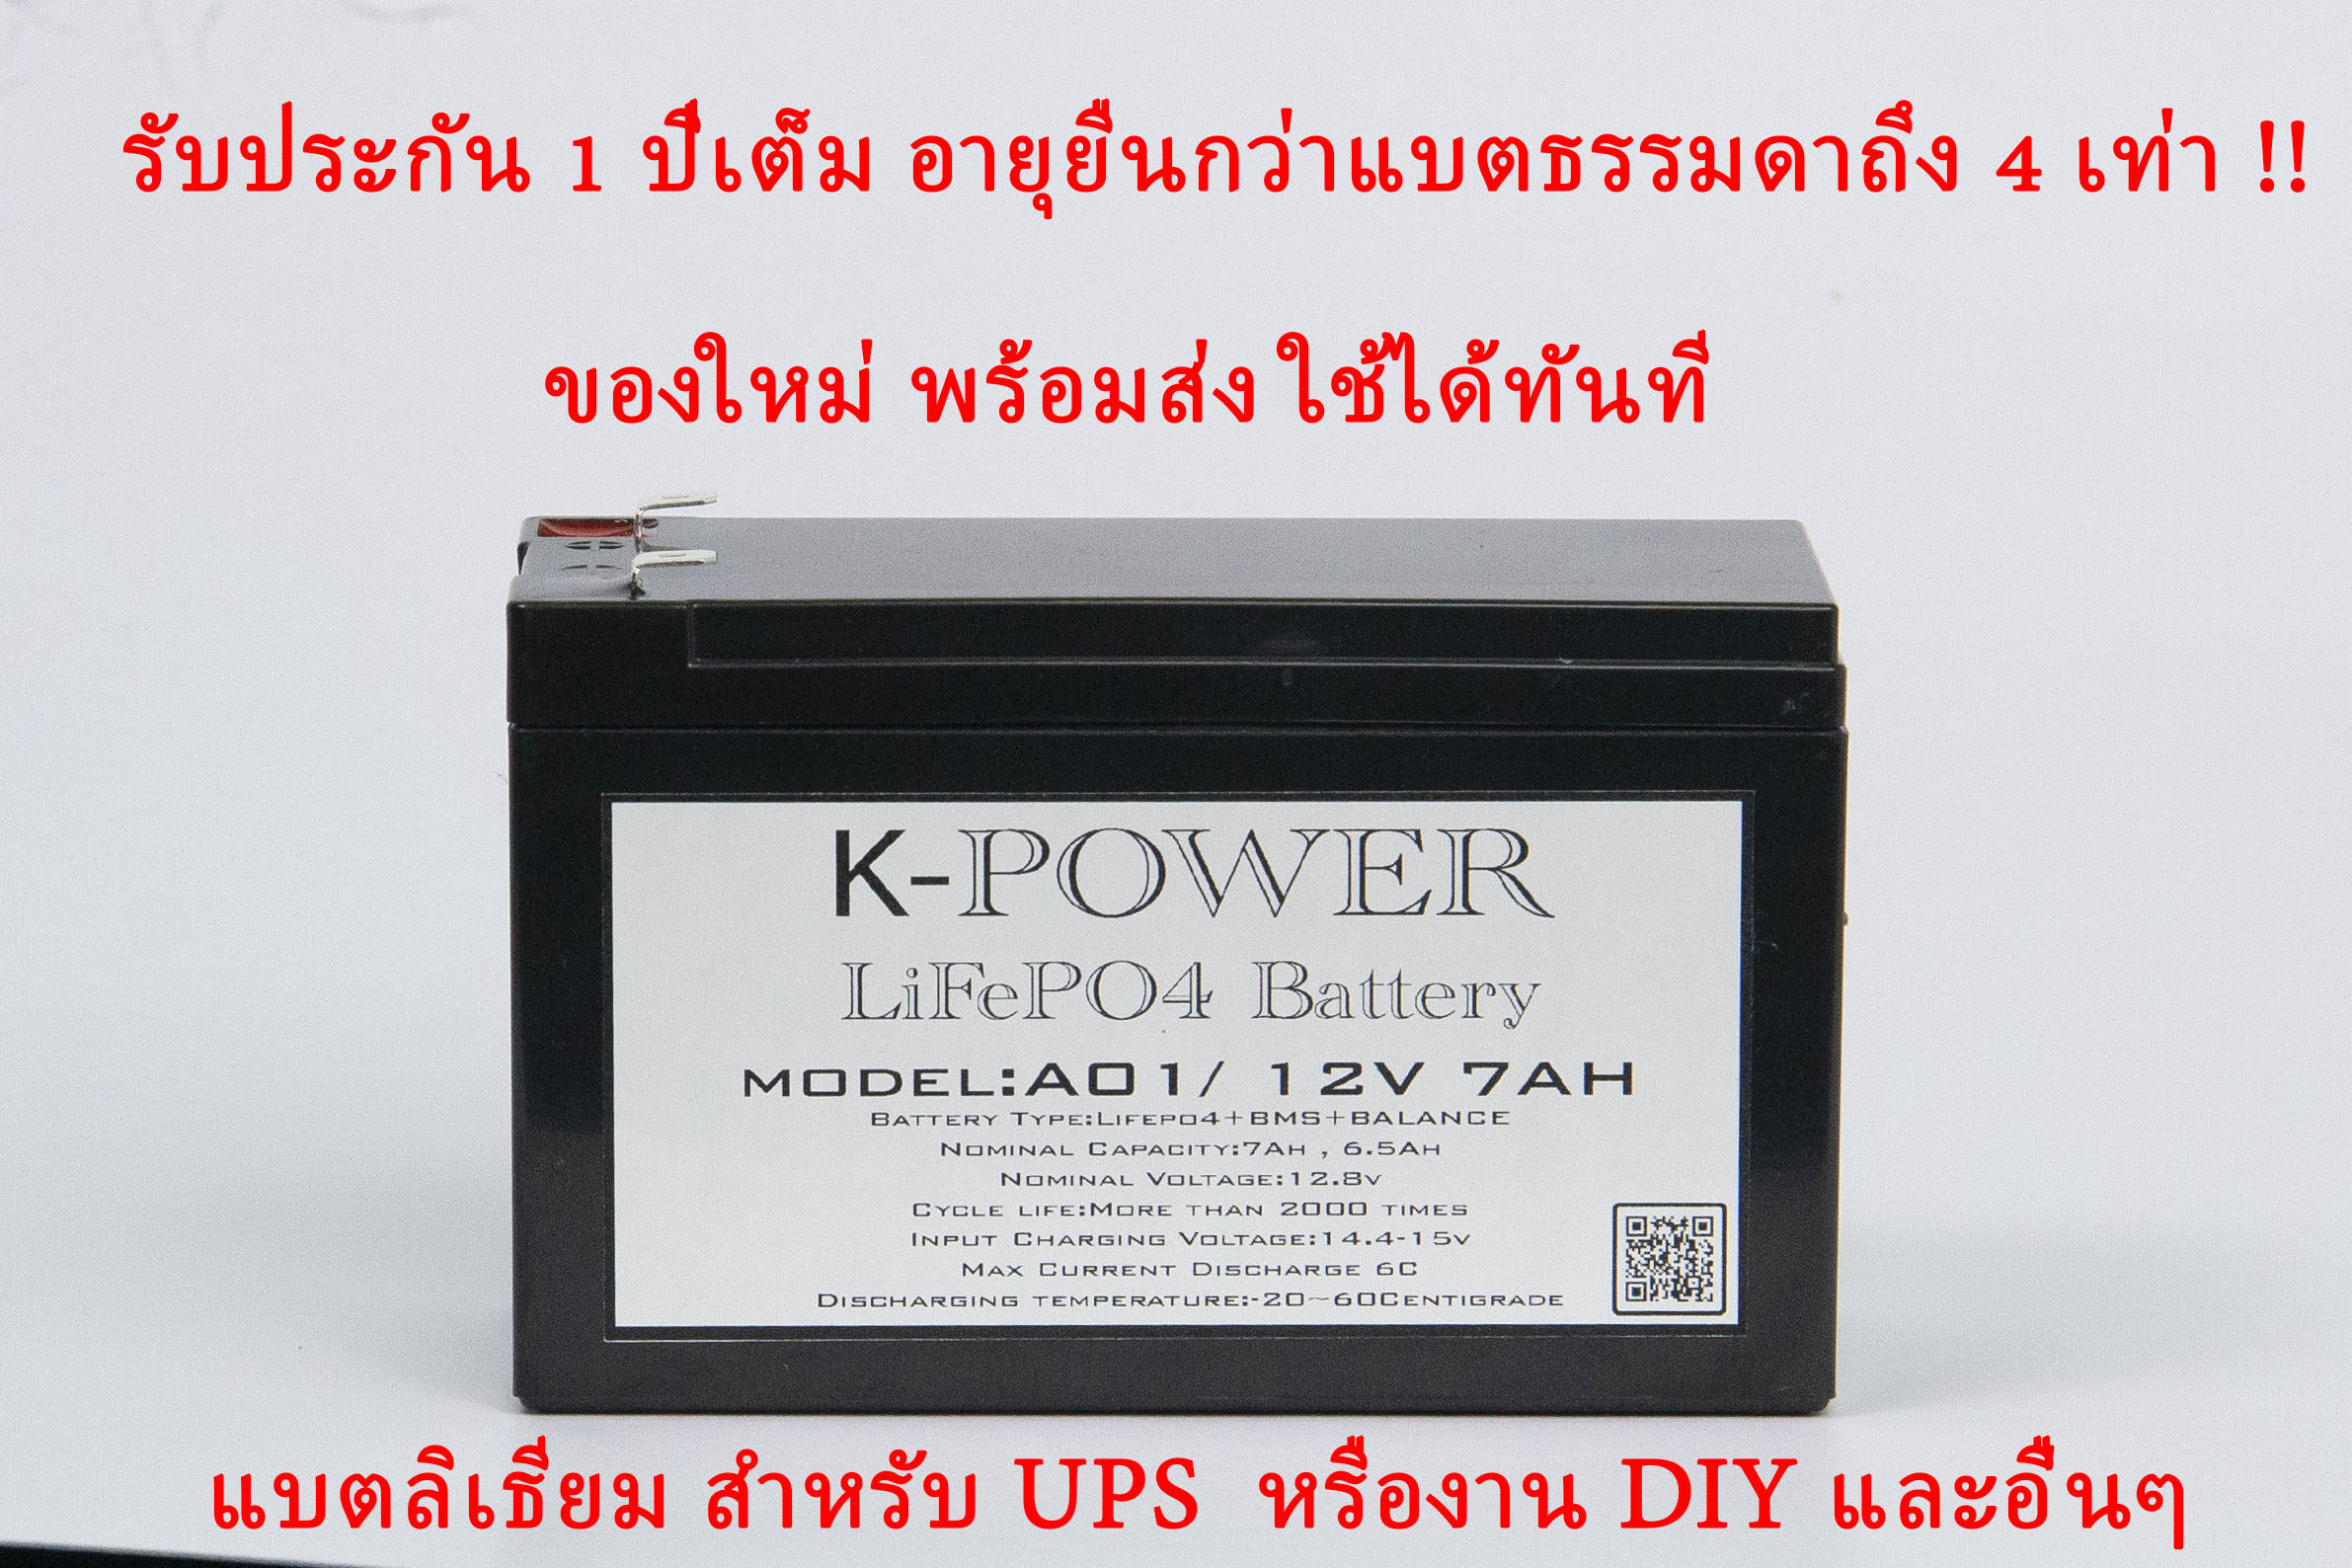 แบตลิเธียม เครื่องสำรองไฟ ยูพีเอส Battery UPS LiFePO4  K-POWER BATTERY LeFePO4 12V 7AH + BMS+Balancer for UPS แบตลิเธียม แบตเตอรี่ ลิเธียม ฟอสเฟต โพลิเมอร์ Lifepo4 battery 12V 7ah